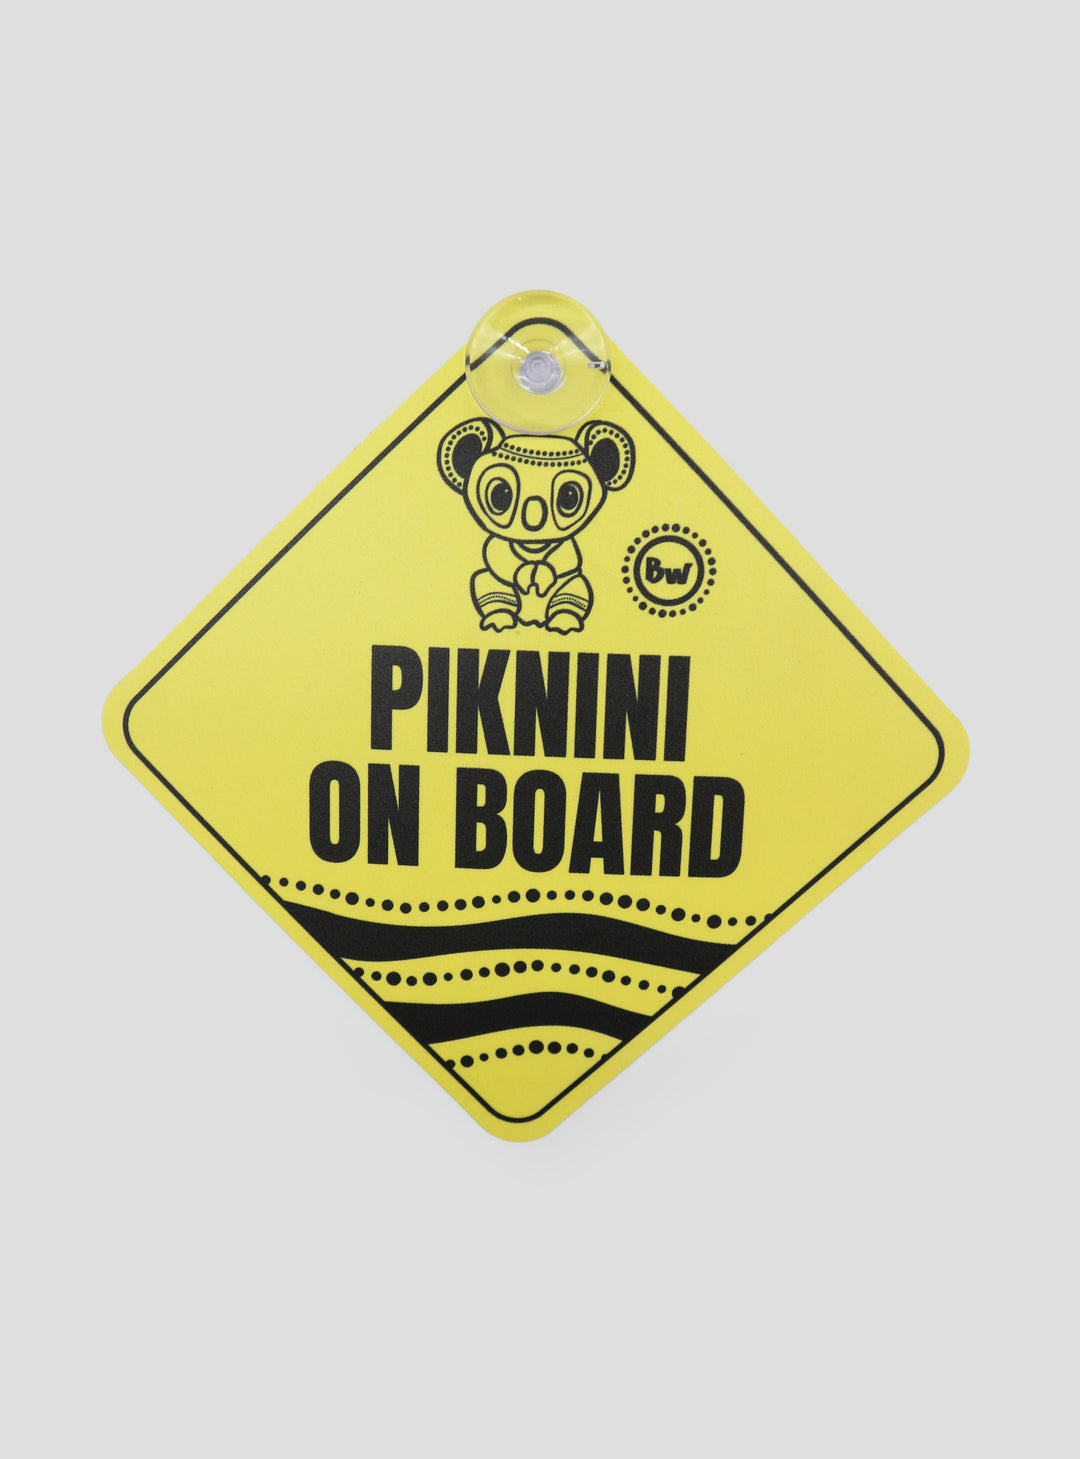 Piknini On Board - Car Sign